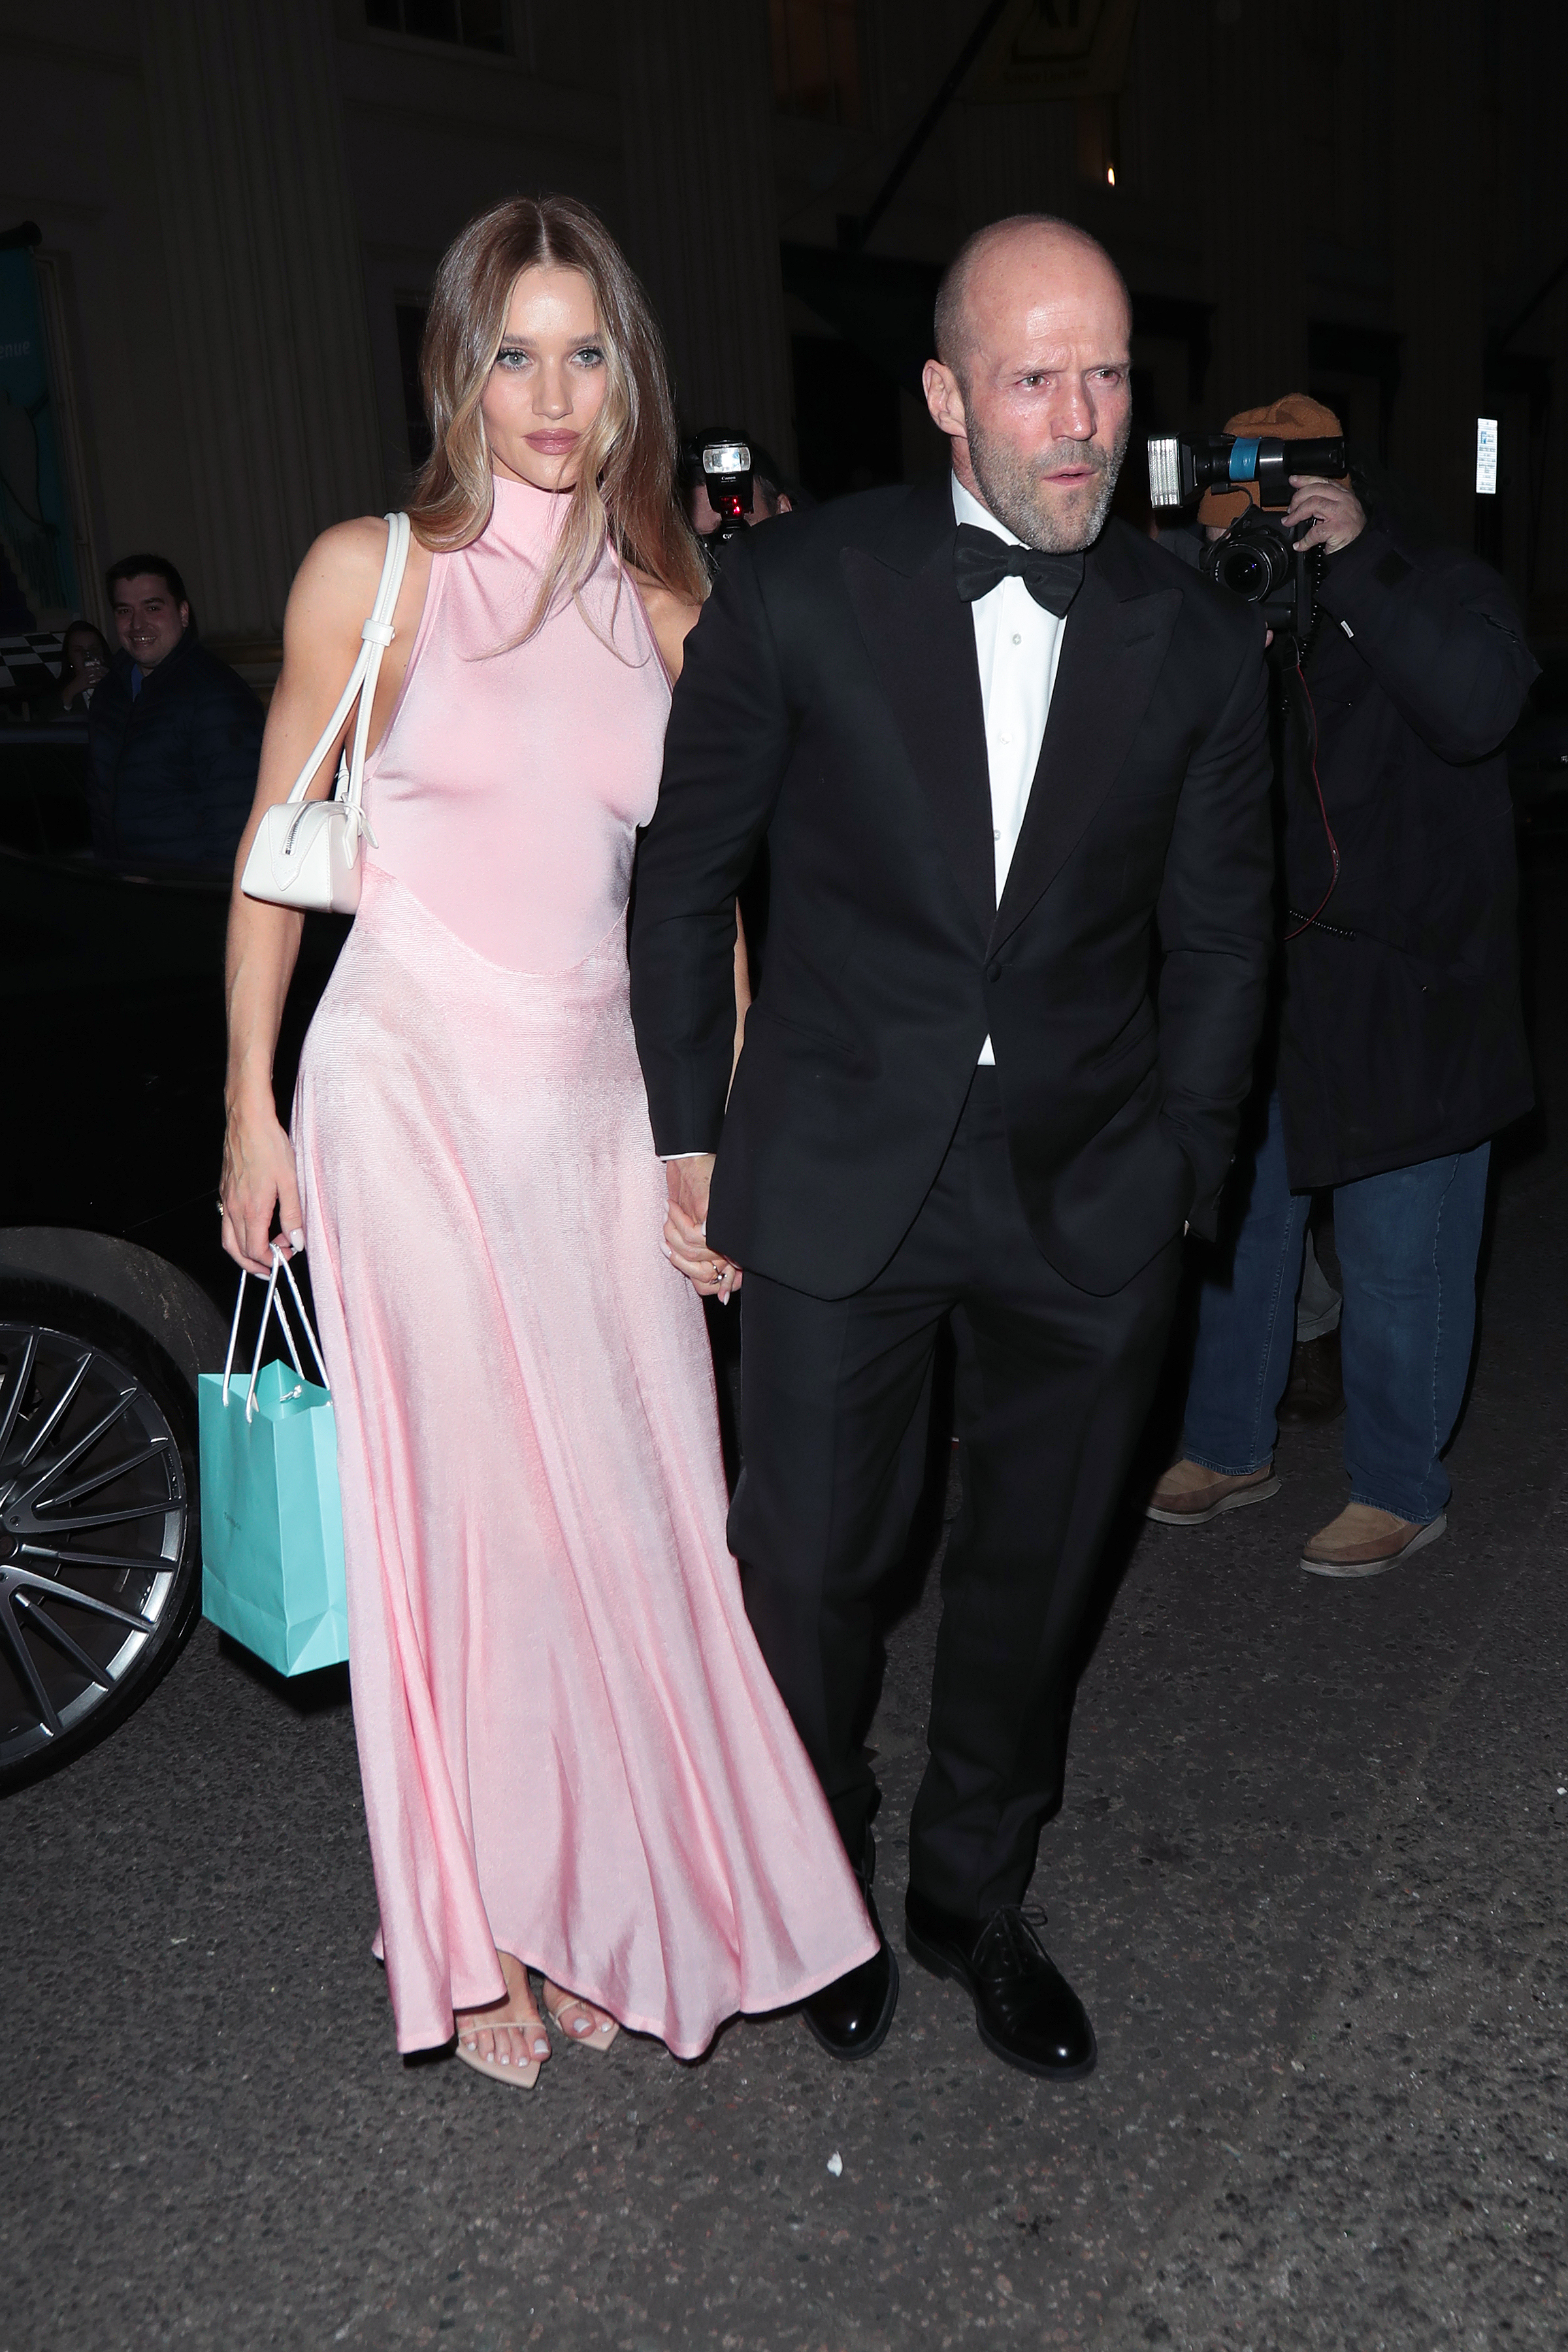 Jason Statham and Rosie-Huntington Whitely looked simple and stylish